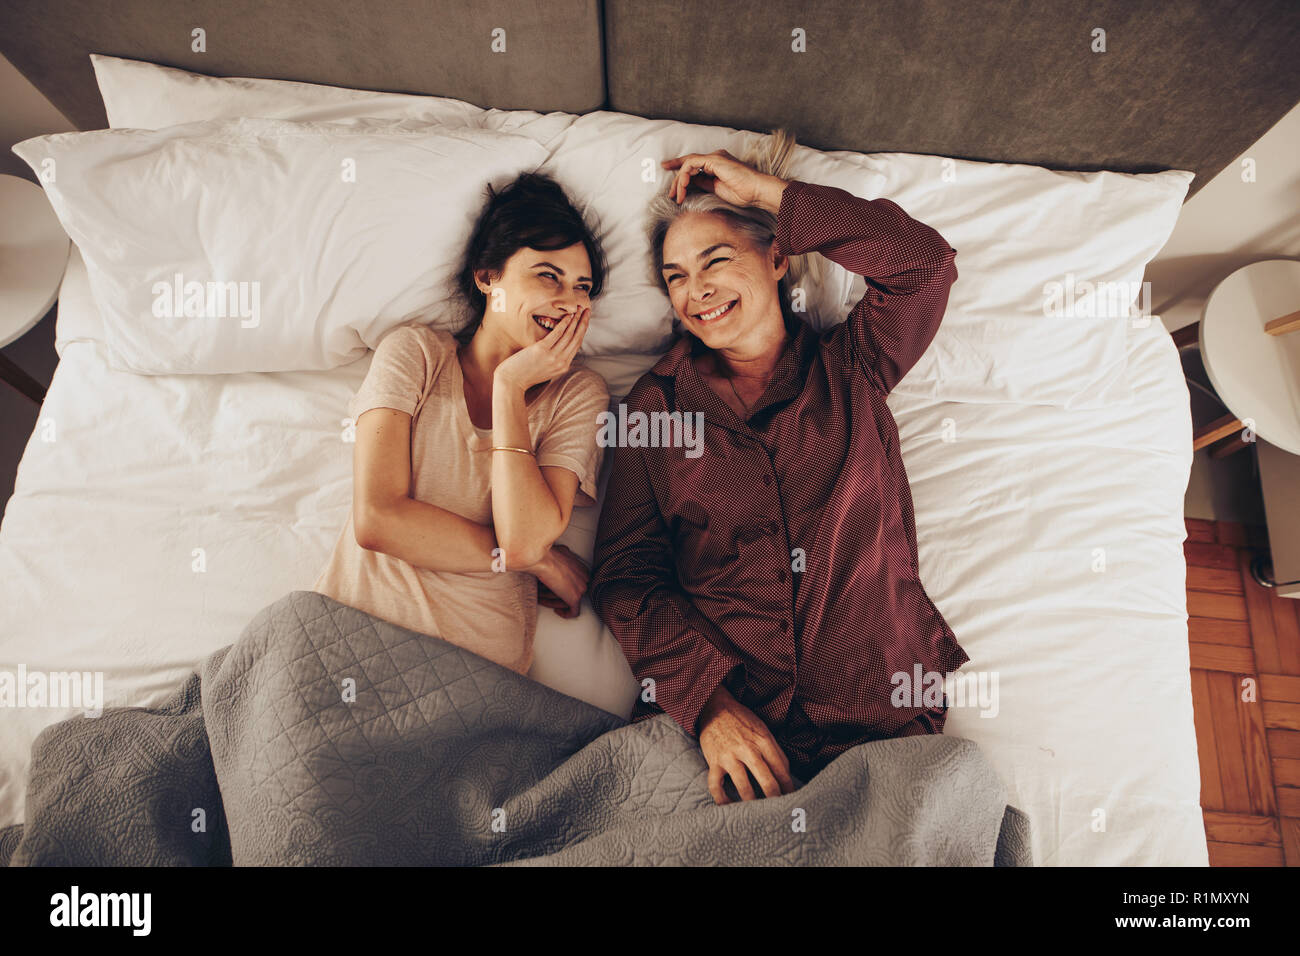 Top View of smiling mother and daughter lying on bed at home. Dormir à côté de sa mère, femme et rire avec la main sur la bouche. Banque D'Images